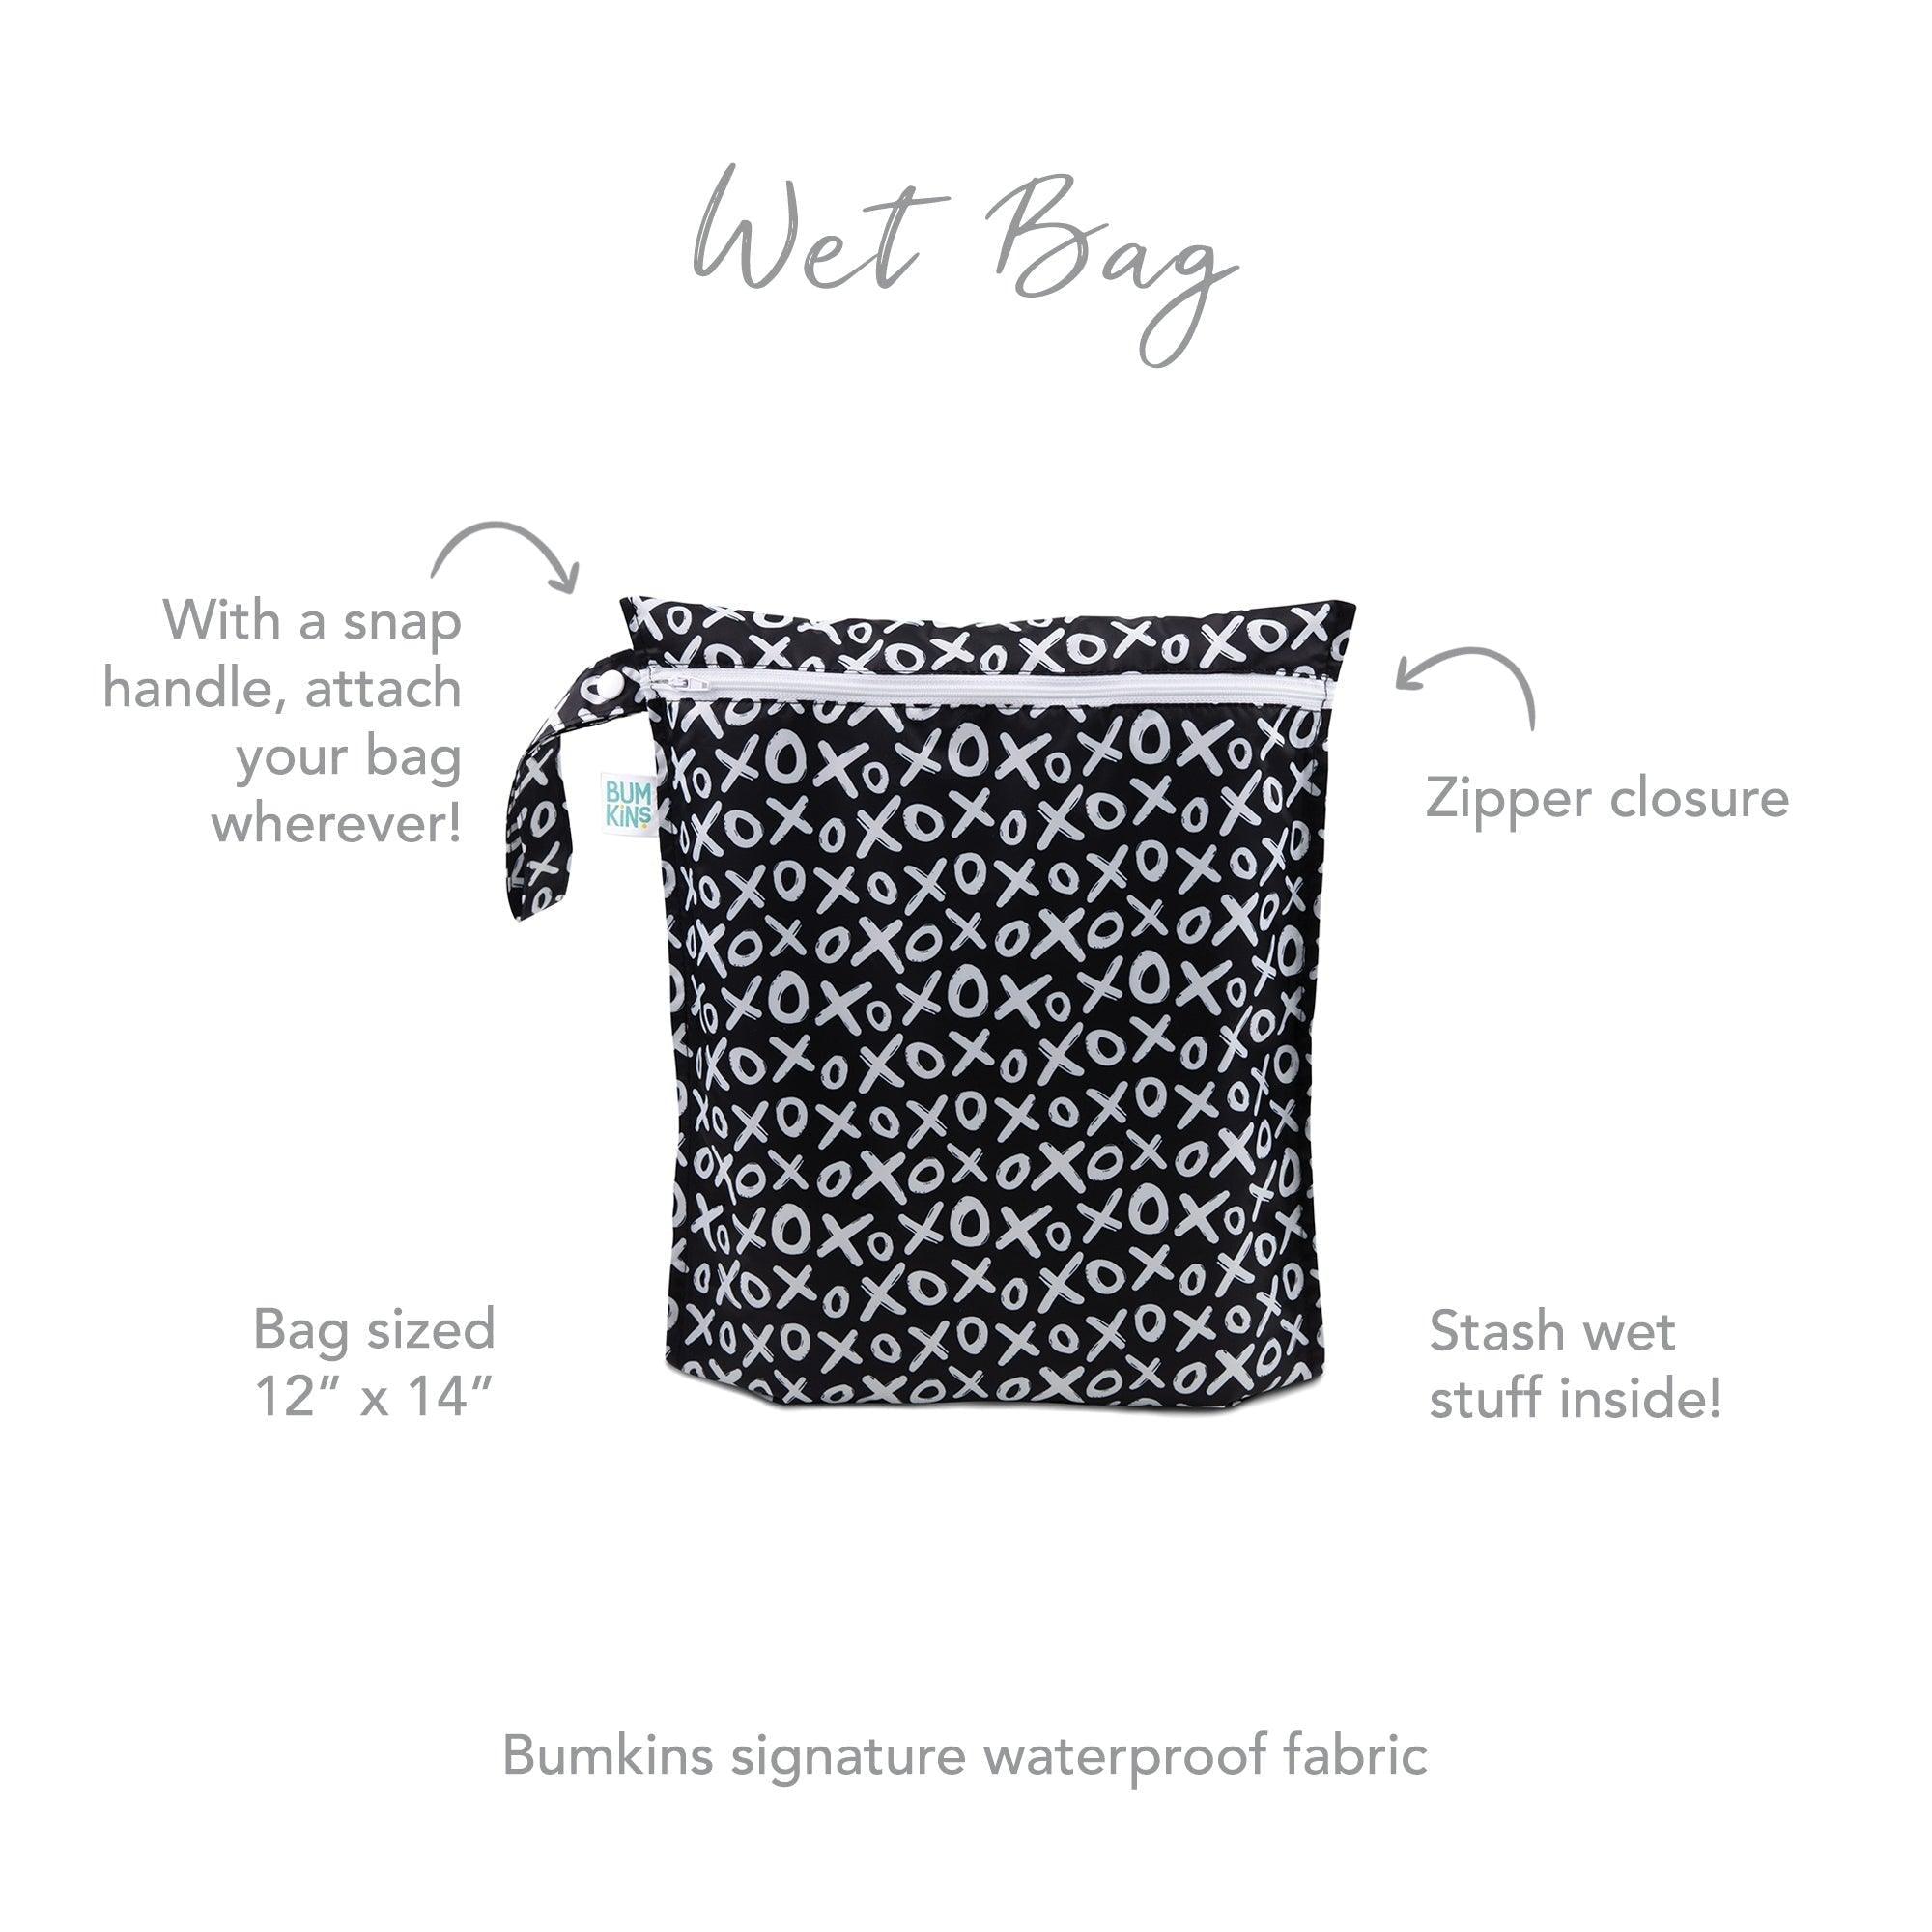 Wet Bag: XOXO - Bumkins